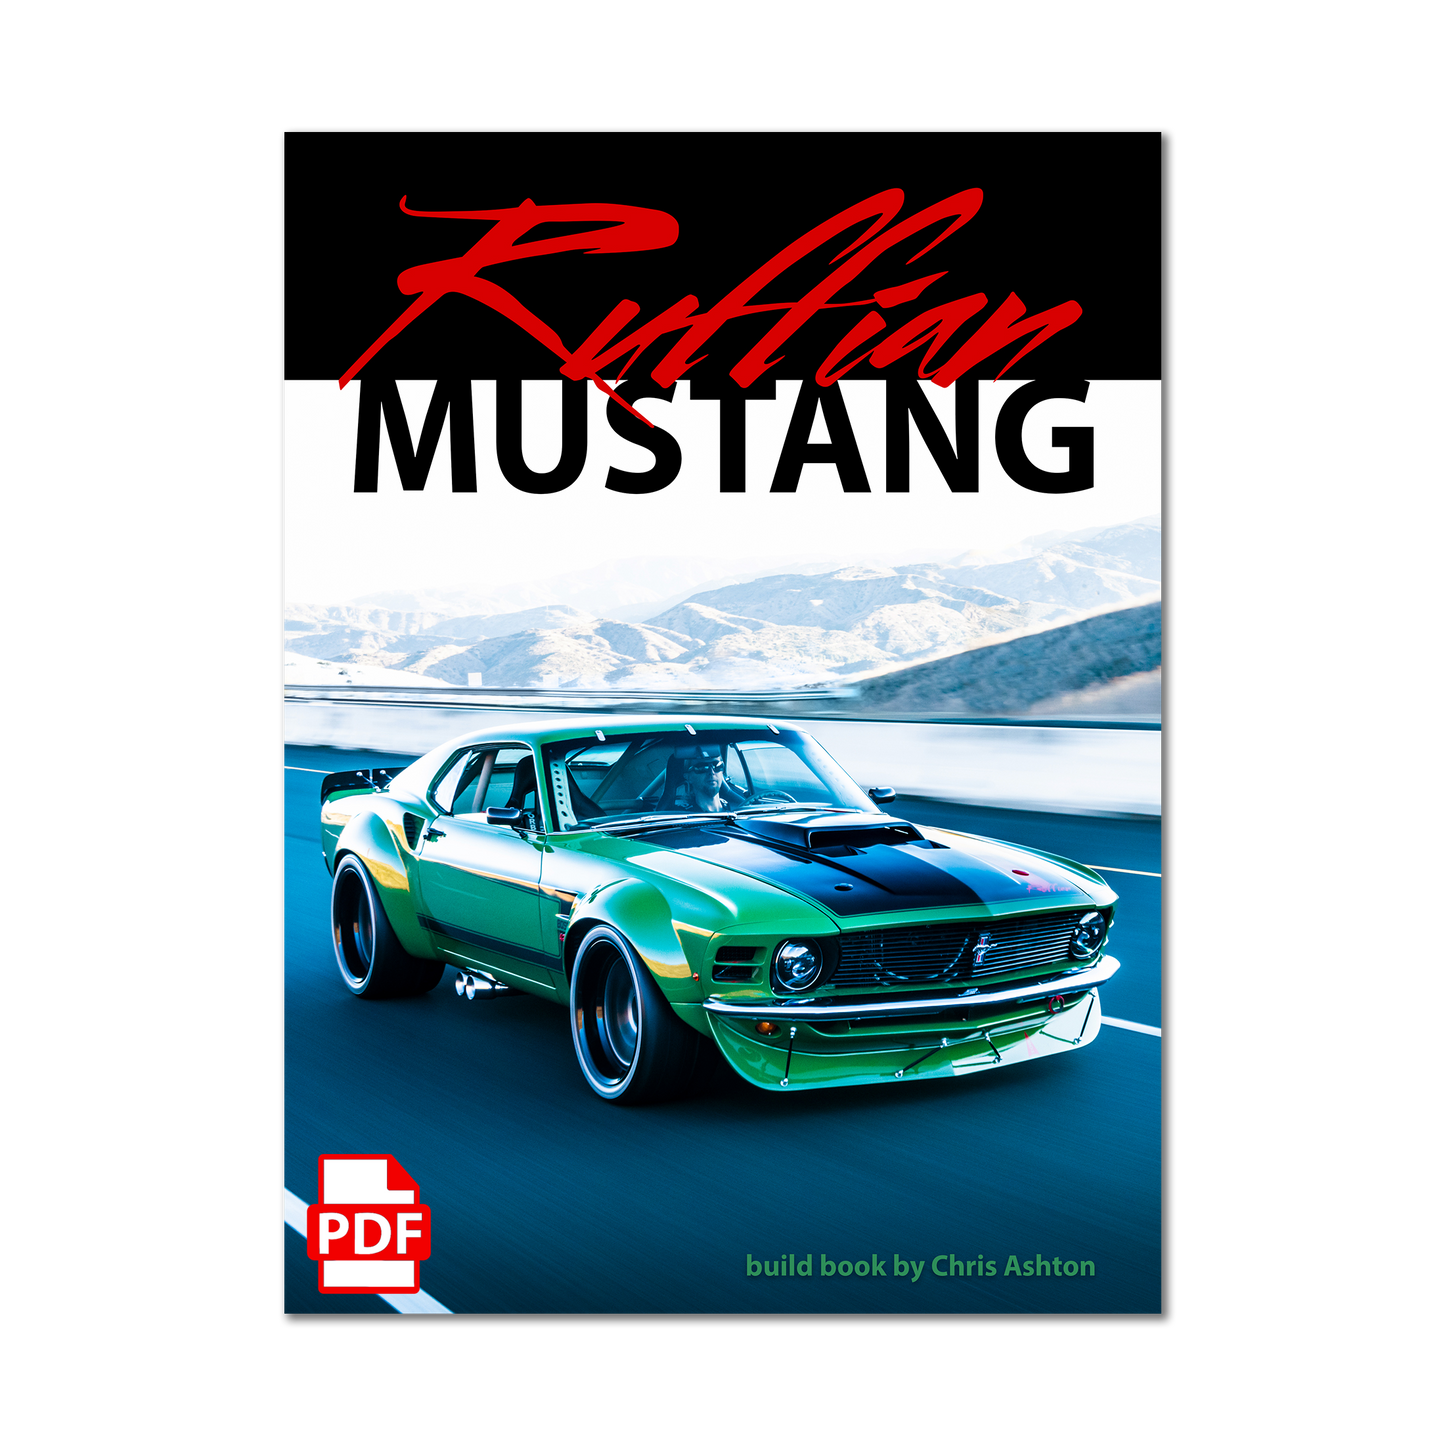 "RUFFIAN MUSTANG" A Ruffian Cars Build Book (PDF Only)